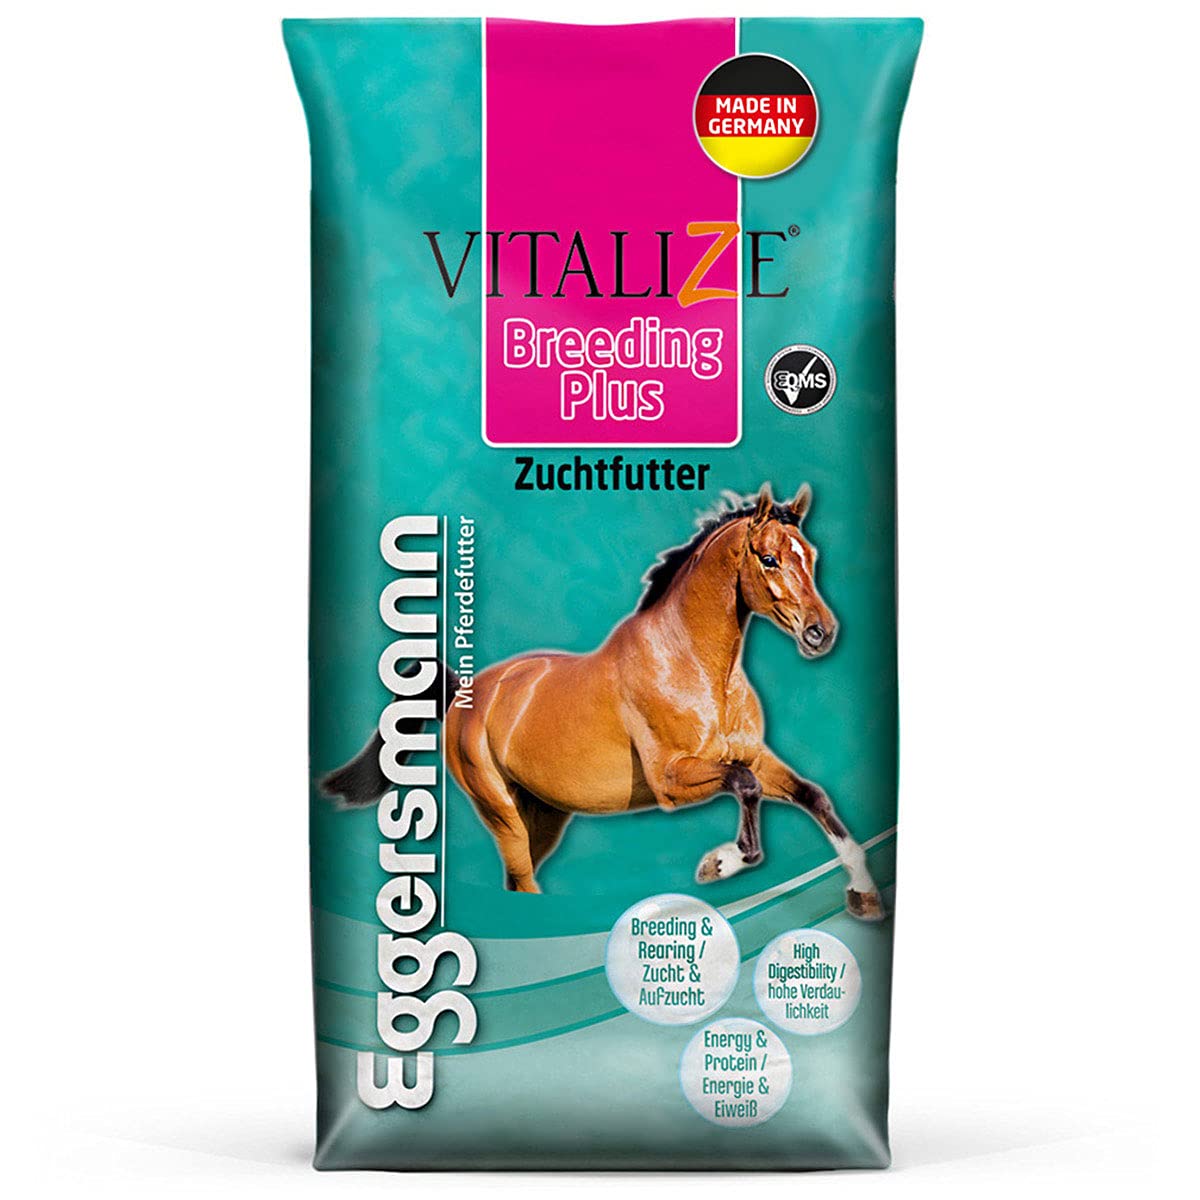 Eggersmann Vitalize Breeding Plus 20 kg – Pferdefutter für Zuchtpferde – Mit erhöhtem Energie- und Nährstoffgehalt – Natürliches Eggersmann Pferdefutter